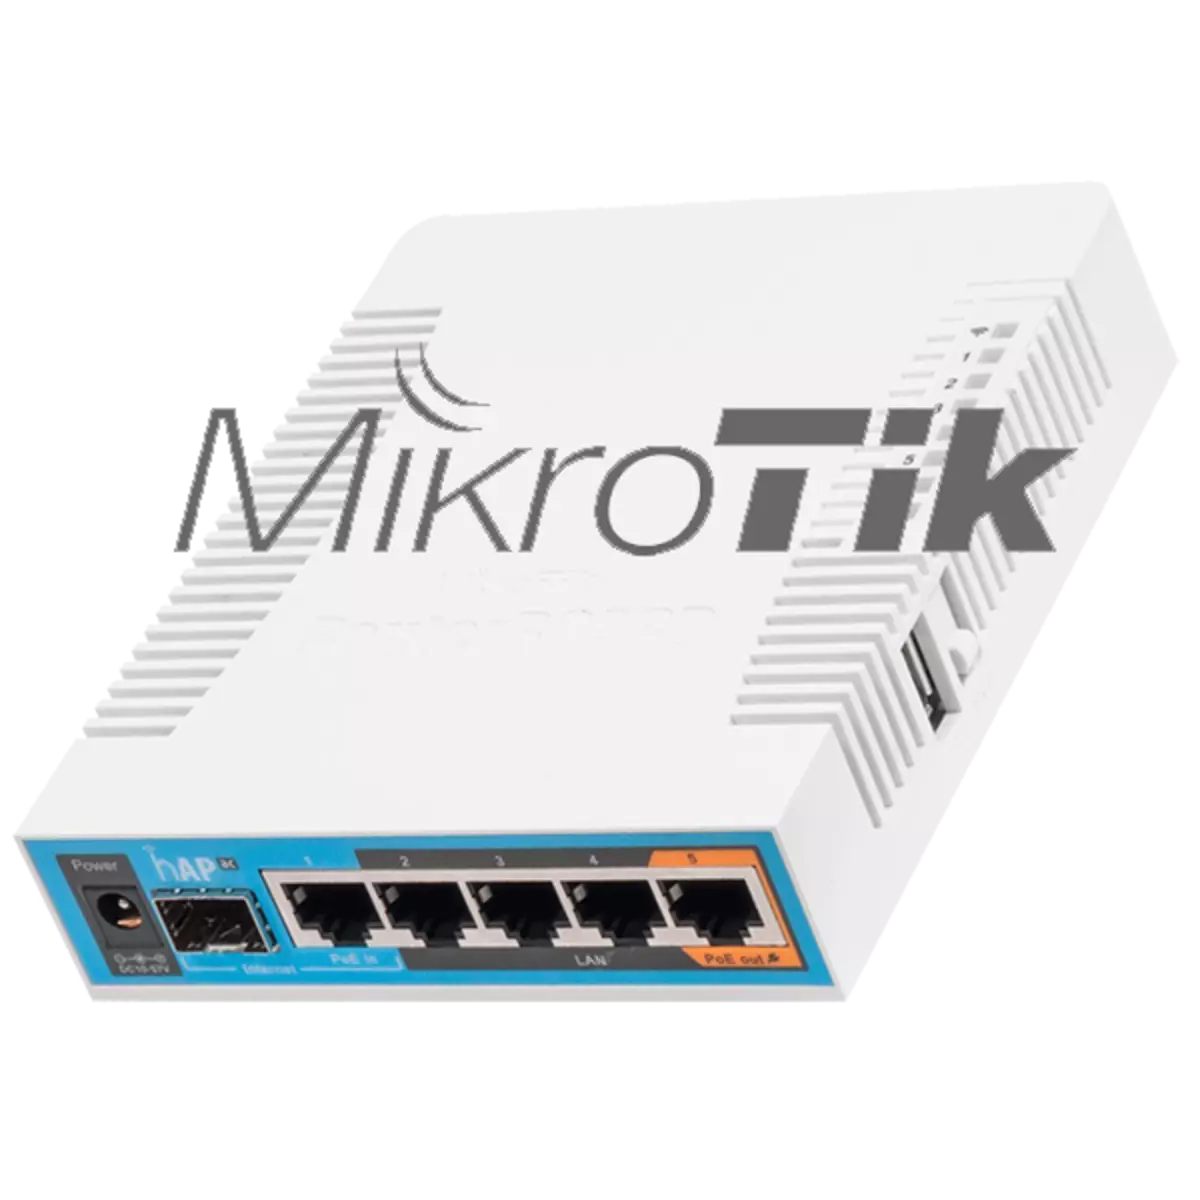 Configurar el router mikrotik